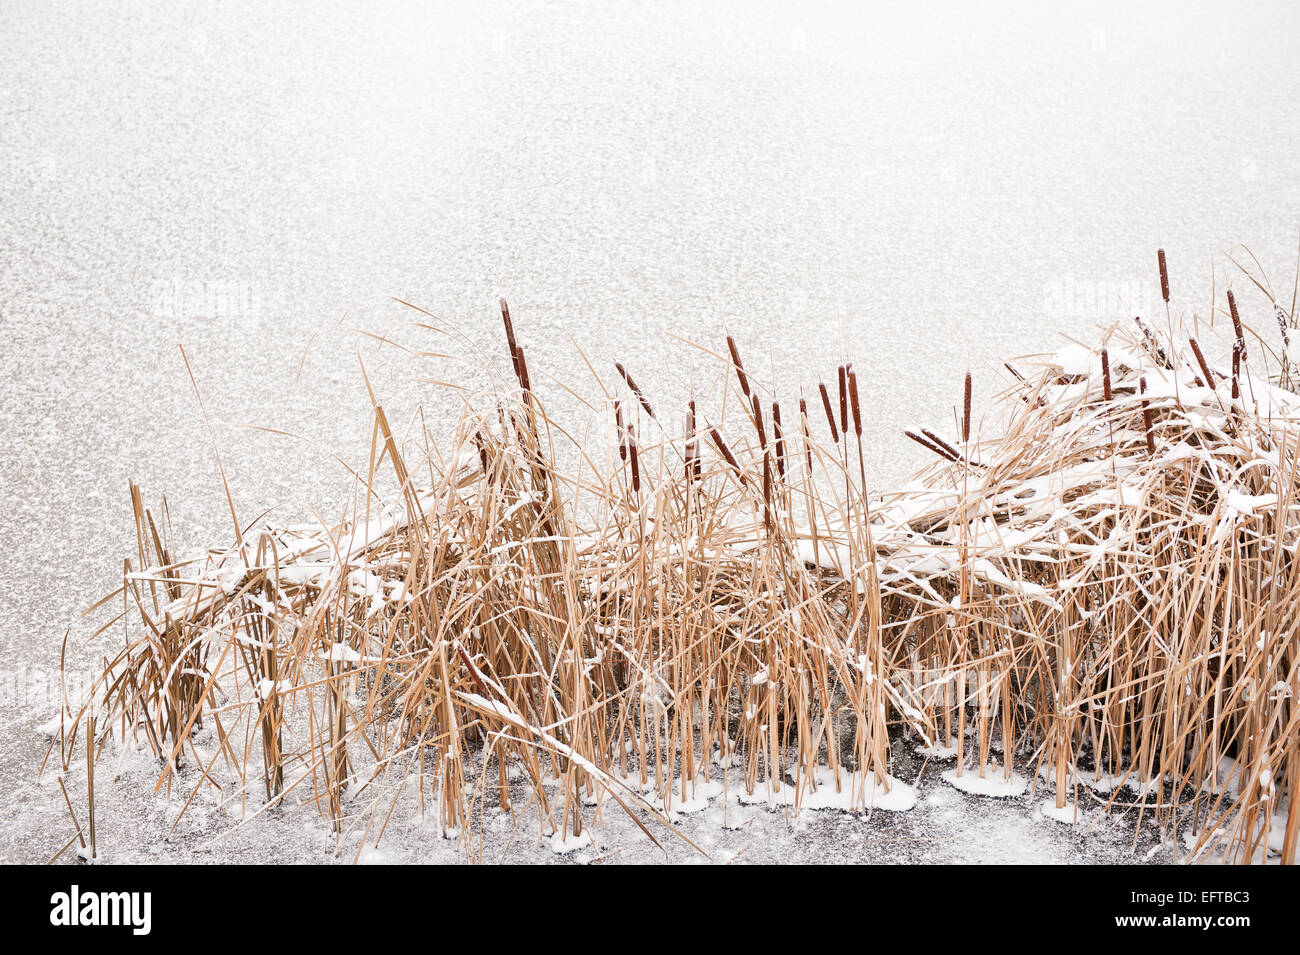 Typha reeds at frozen lake in winter season Stock Photo